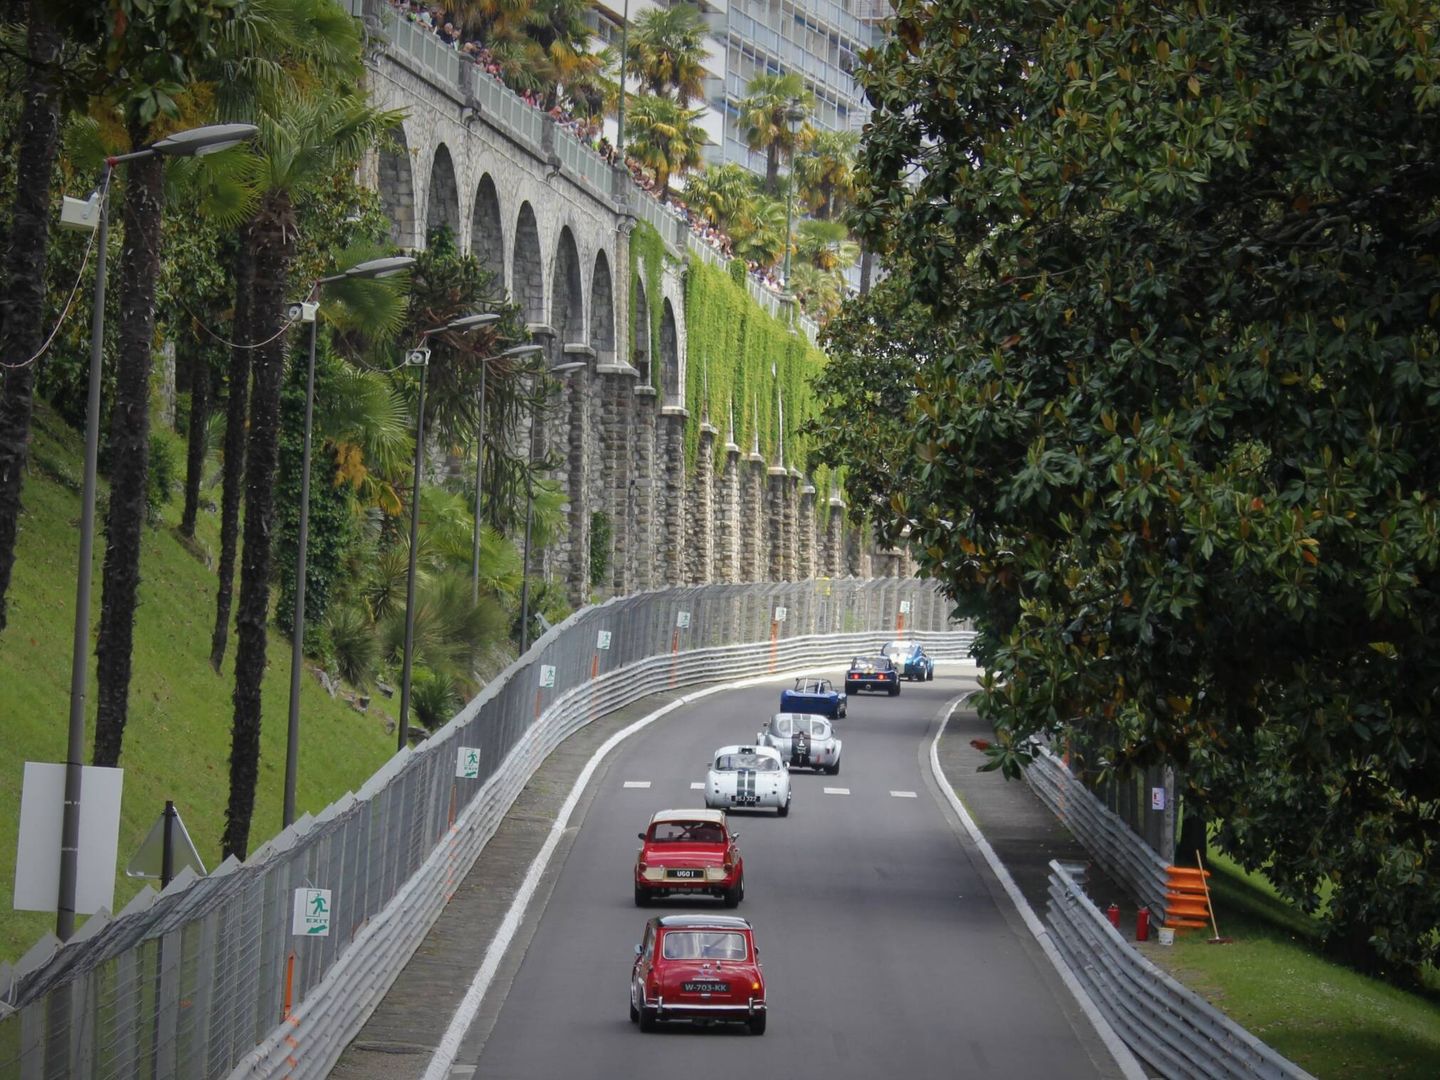 El circuito urbano de Pau, siempre fue considerado uno de los mas bellos del mundo (HE/Paquette)